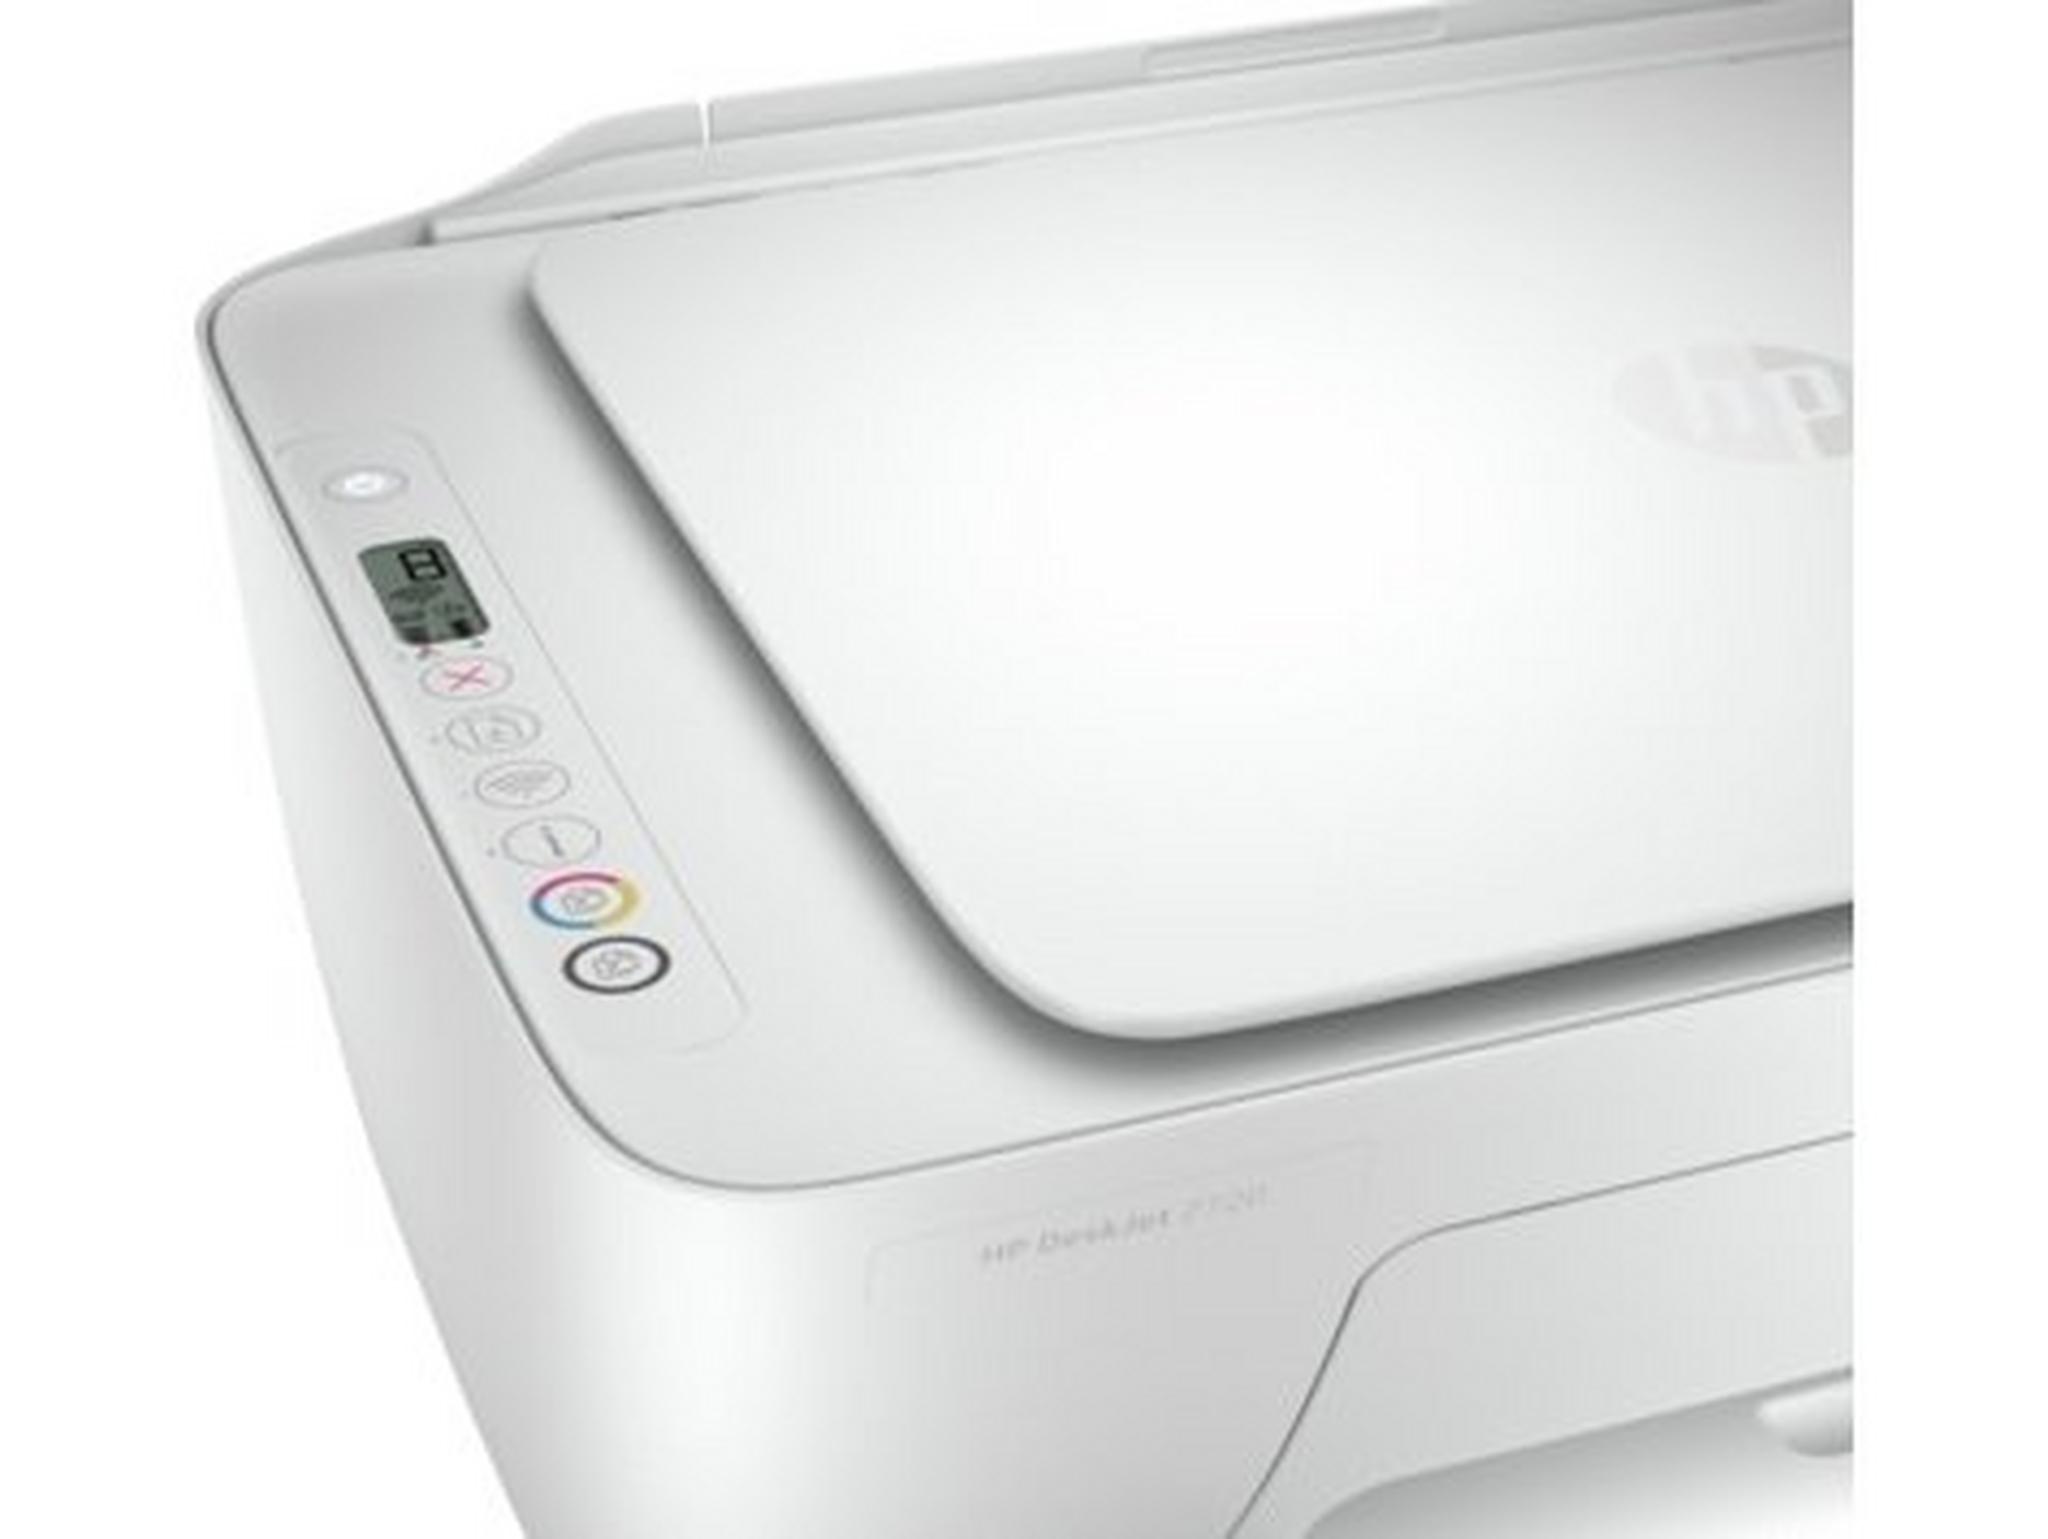 HP DeskJet 2720 All-in-One Printer - White